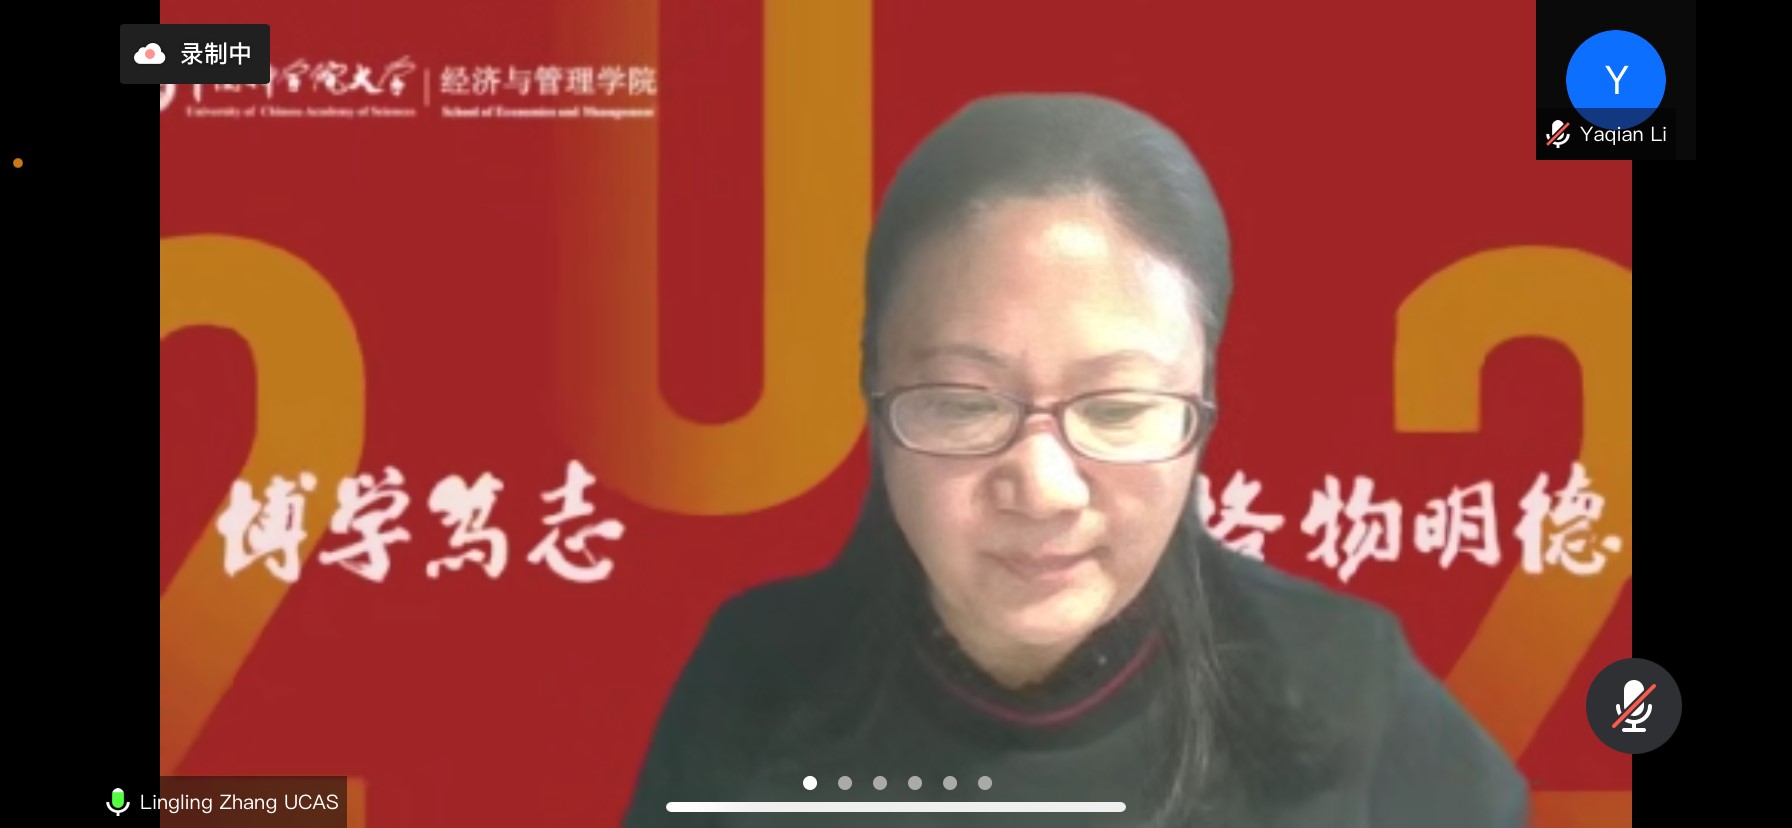 图5 中国科学院大学经济与管理学院党委书记张玲玲教授